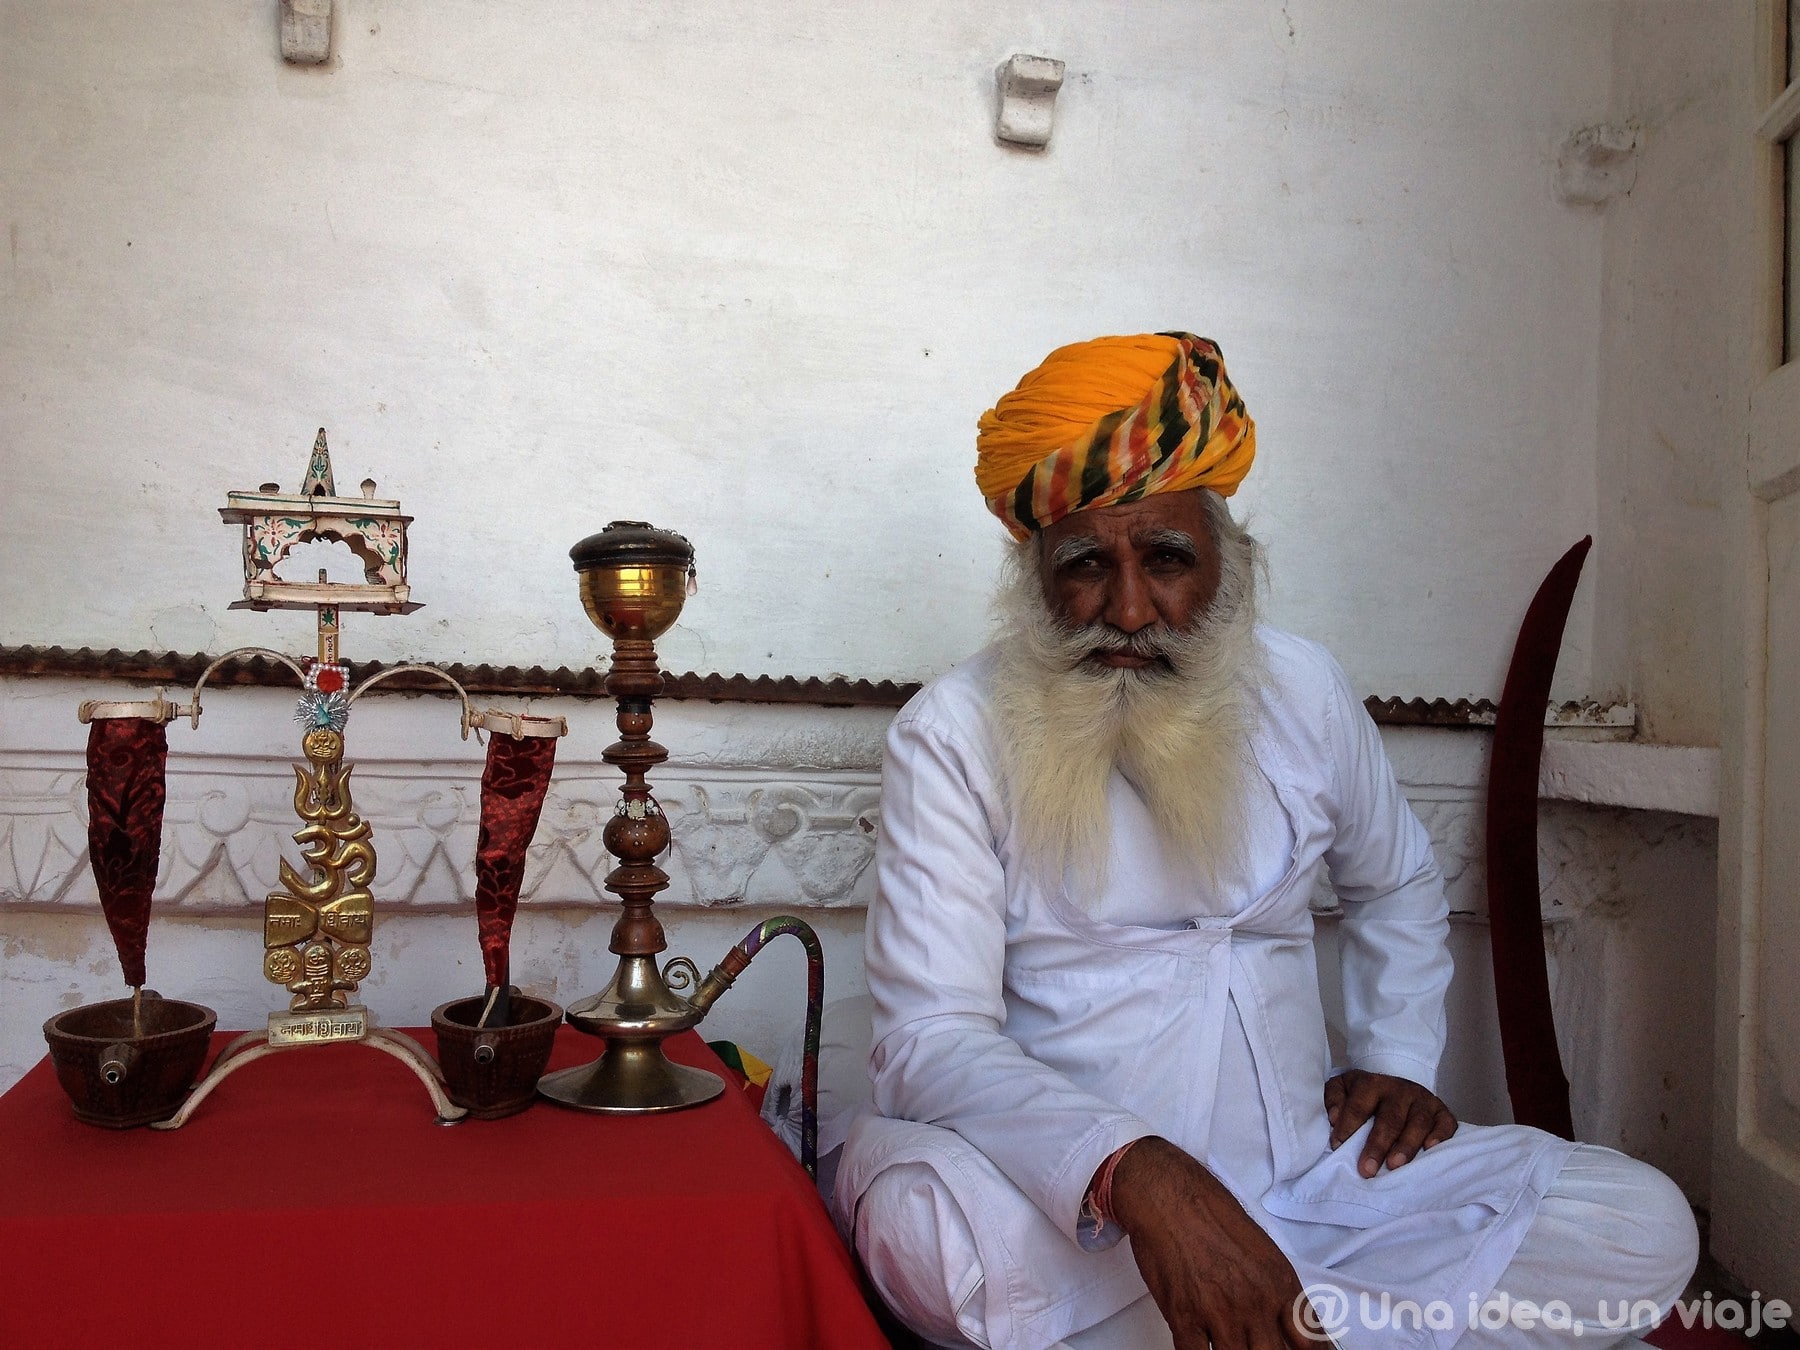 india-rajastan-15-dias-jodhpur-visitar-unaideaunviaje-04